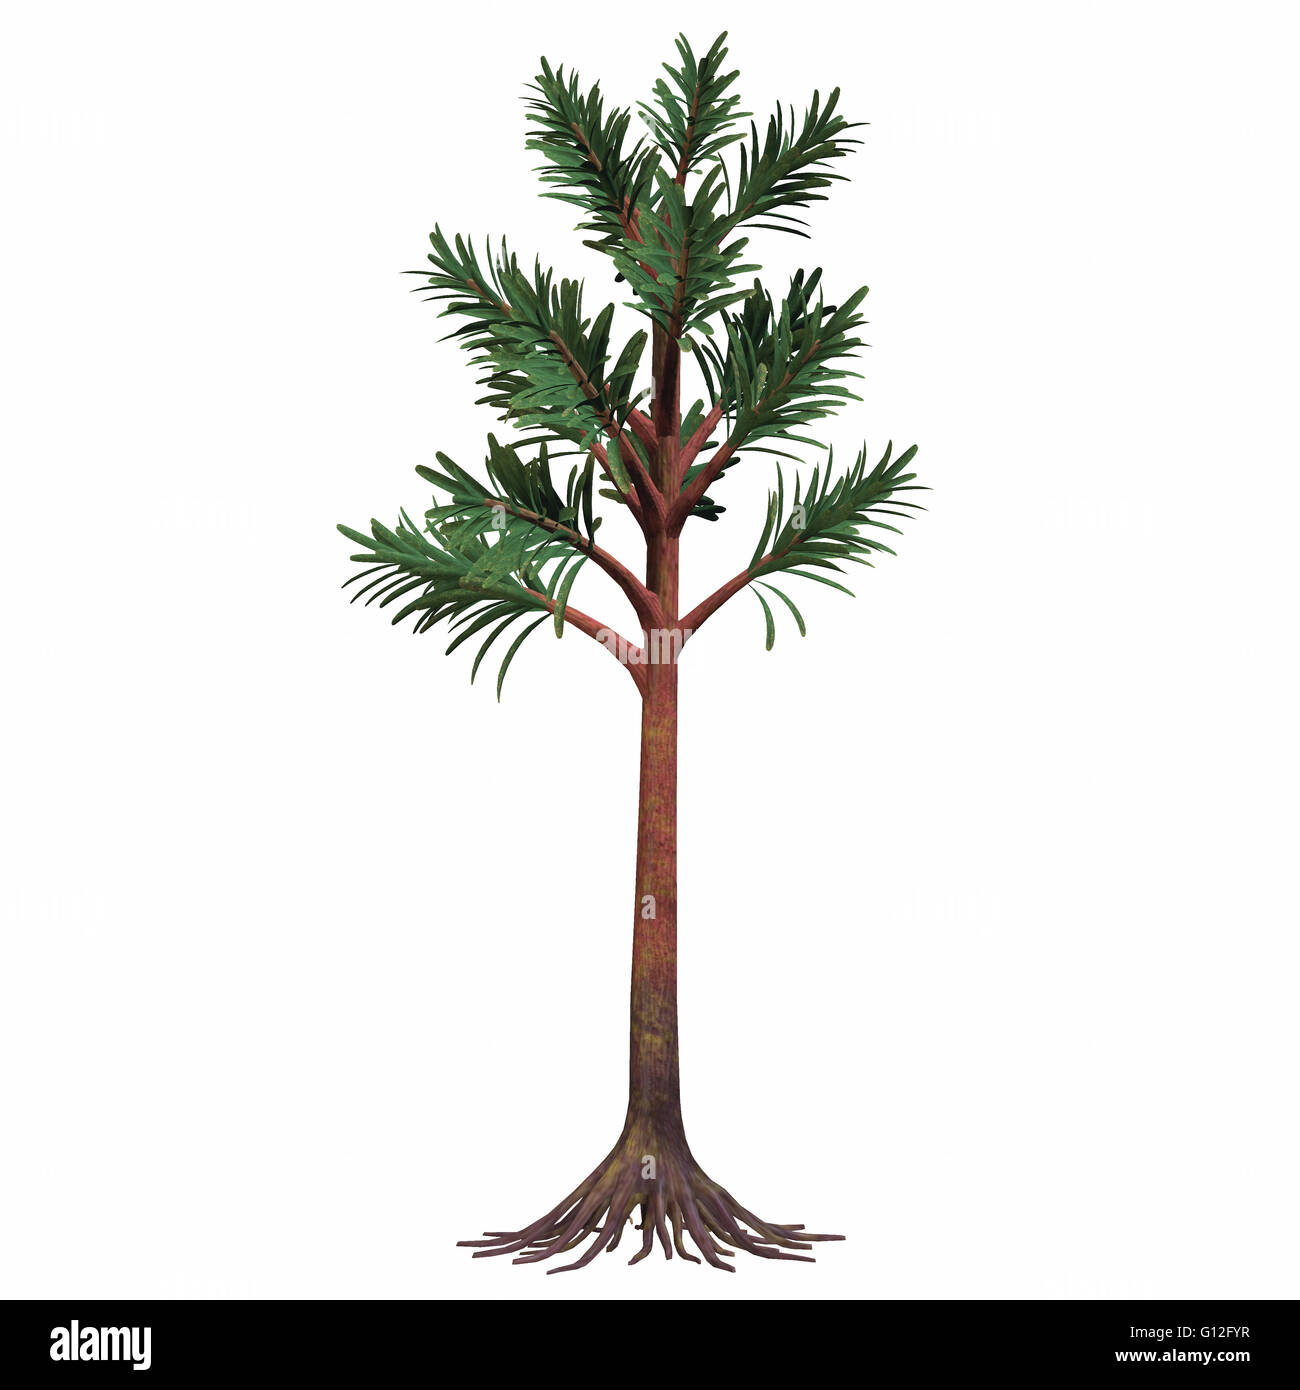 Cordaites sont considérés comme les ancêtres des conifères. Ils étaient des plantes avec une forme arboricole. Banque D'Images